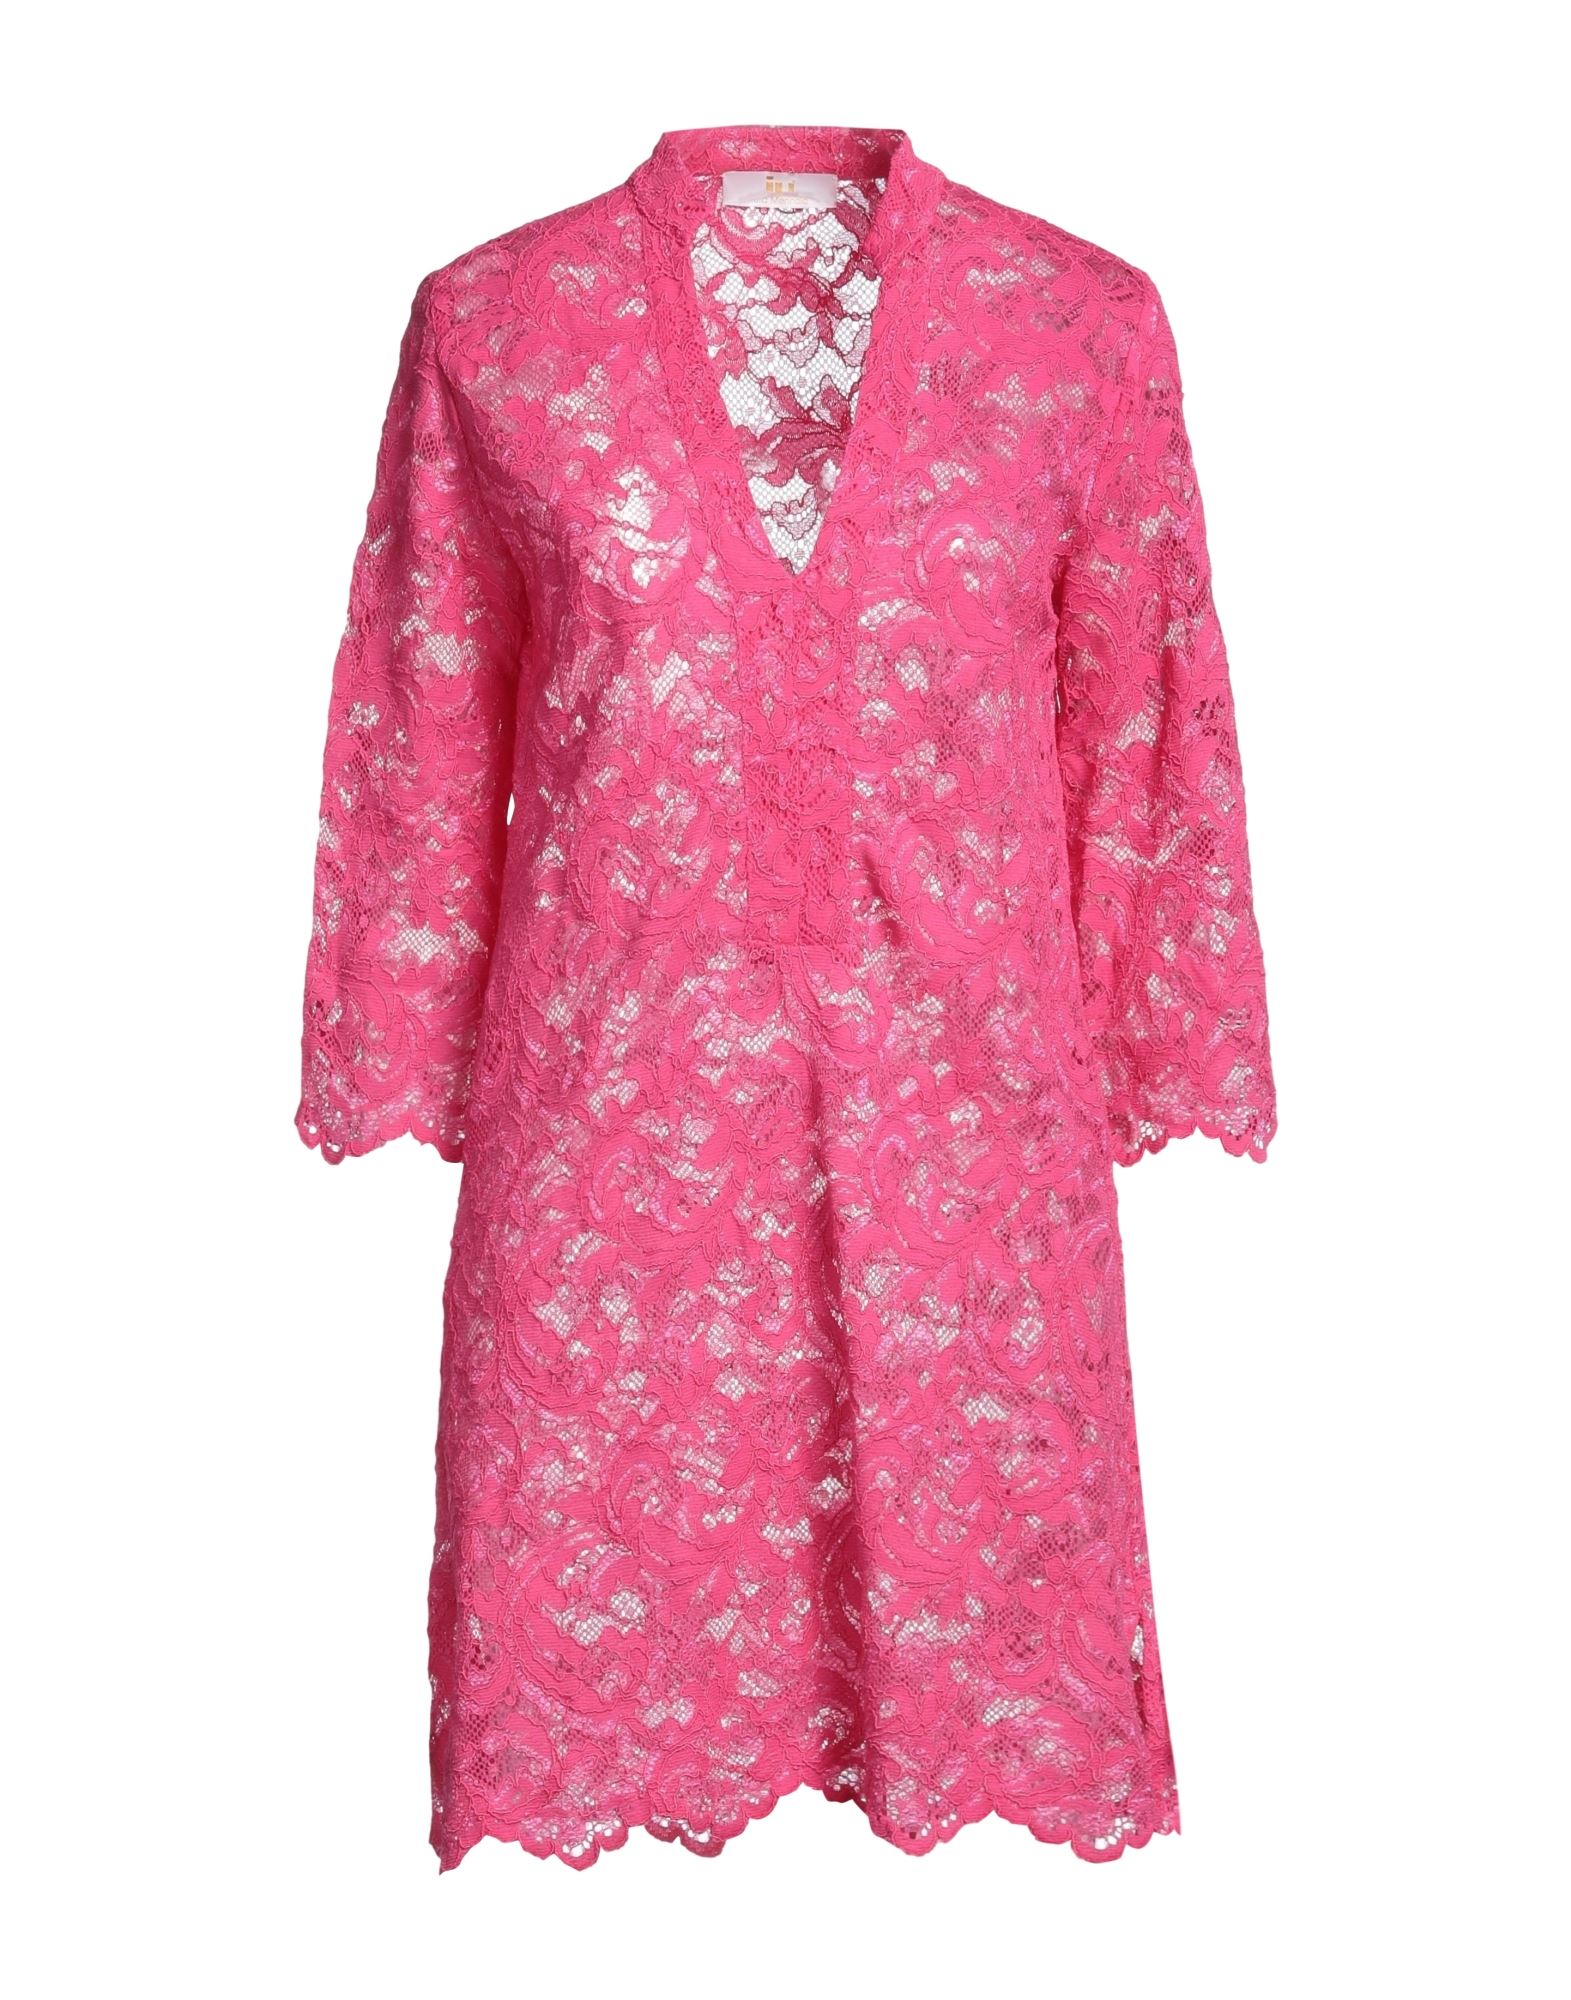 Iu Rita Mennoia Short Dresses In Pink